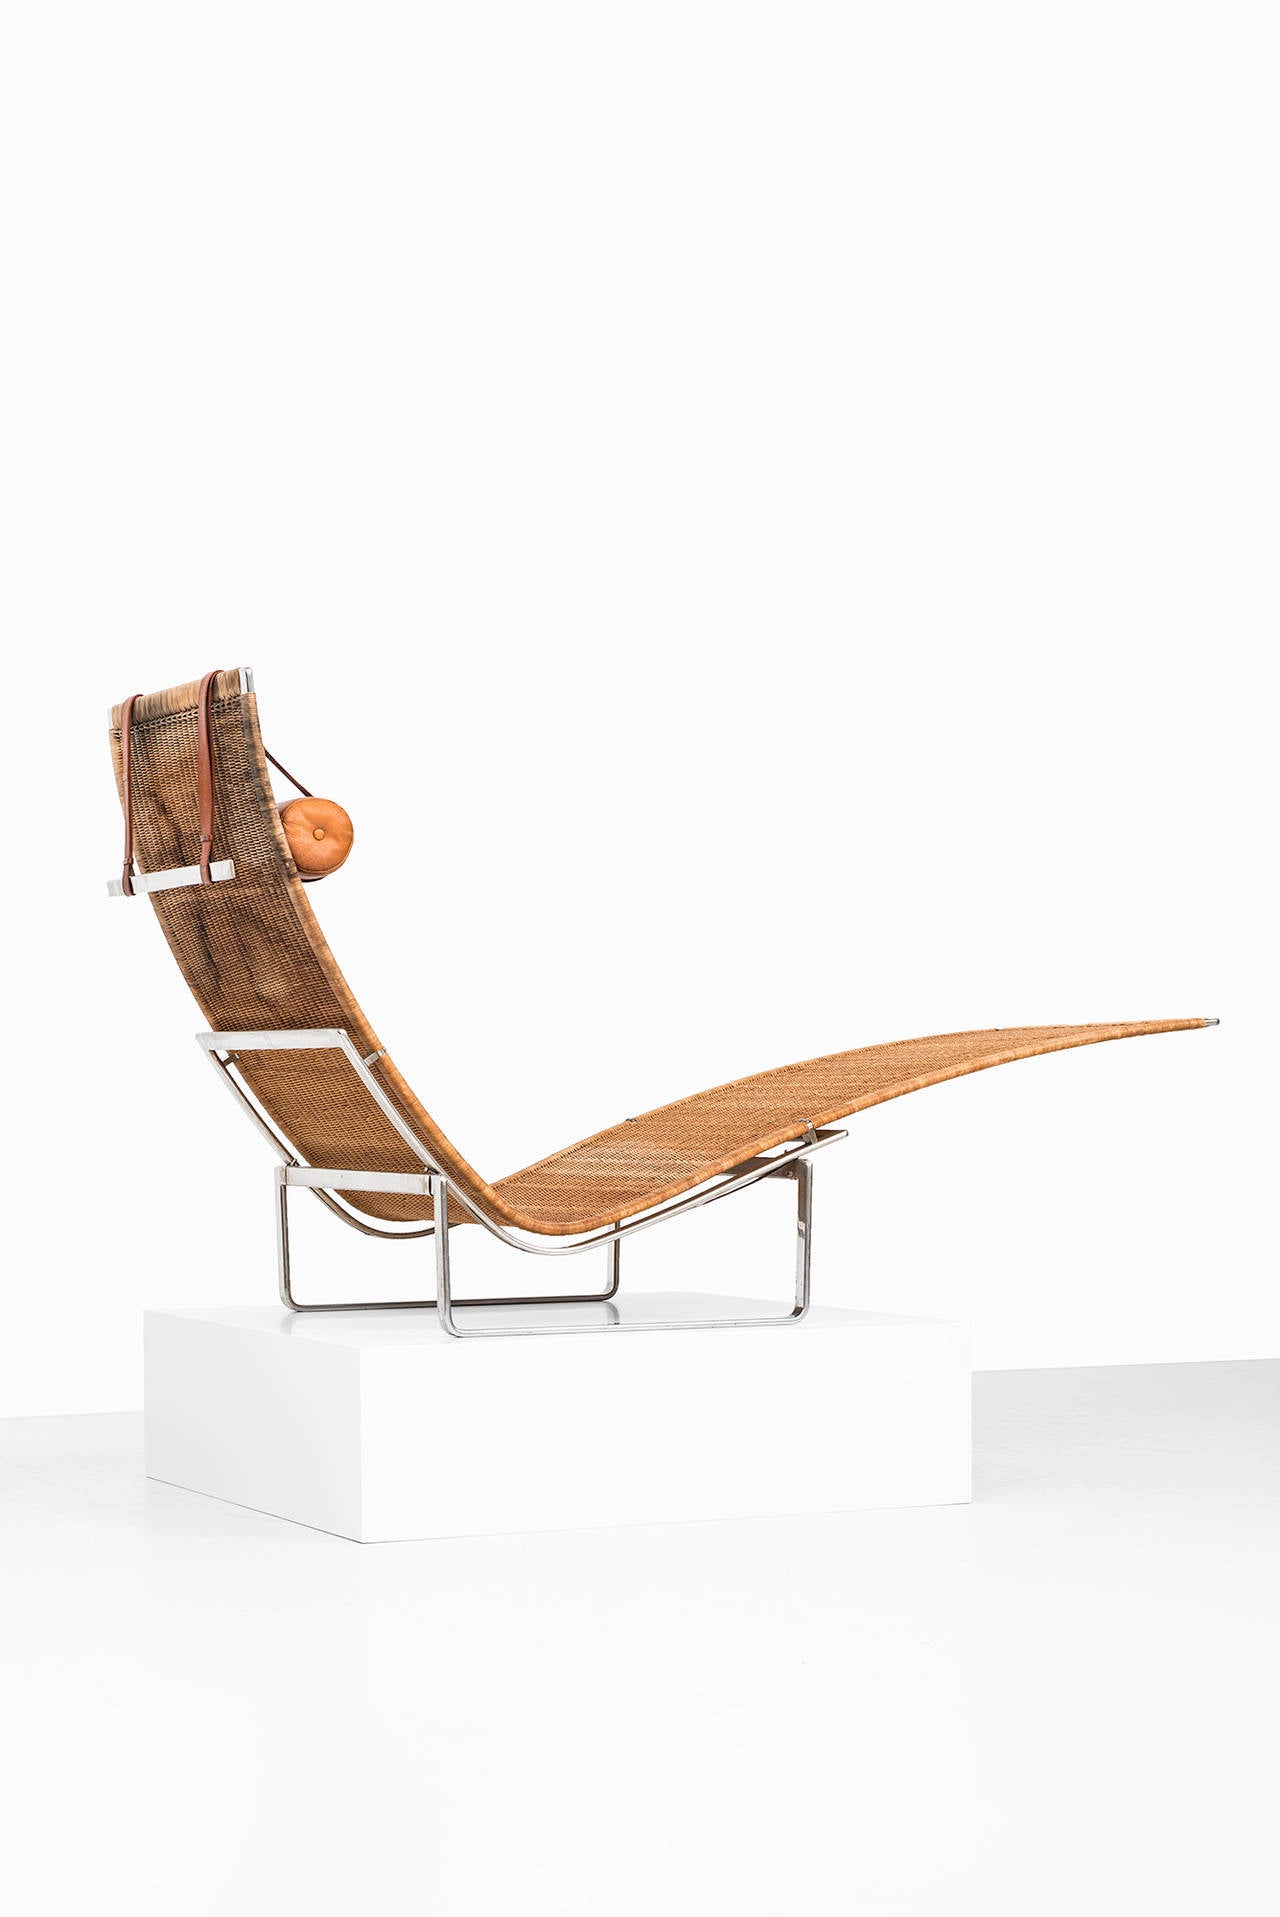 Late 20th Century Poul Kjærholm Lounge Chair Model Pk-24 for E. Kold Christensen in Denmark